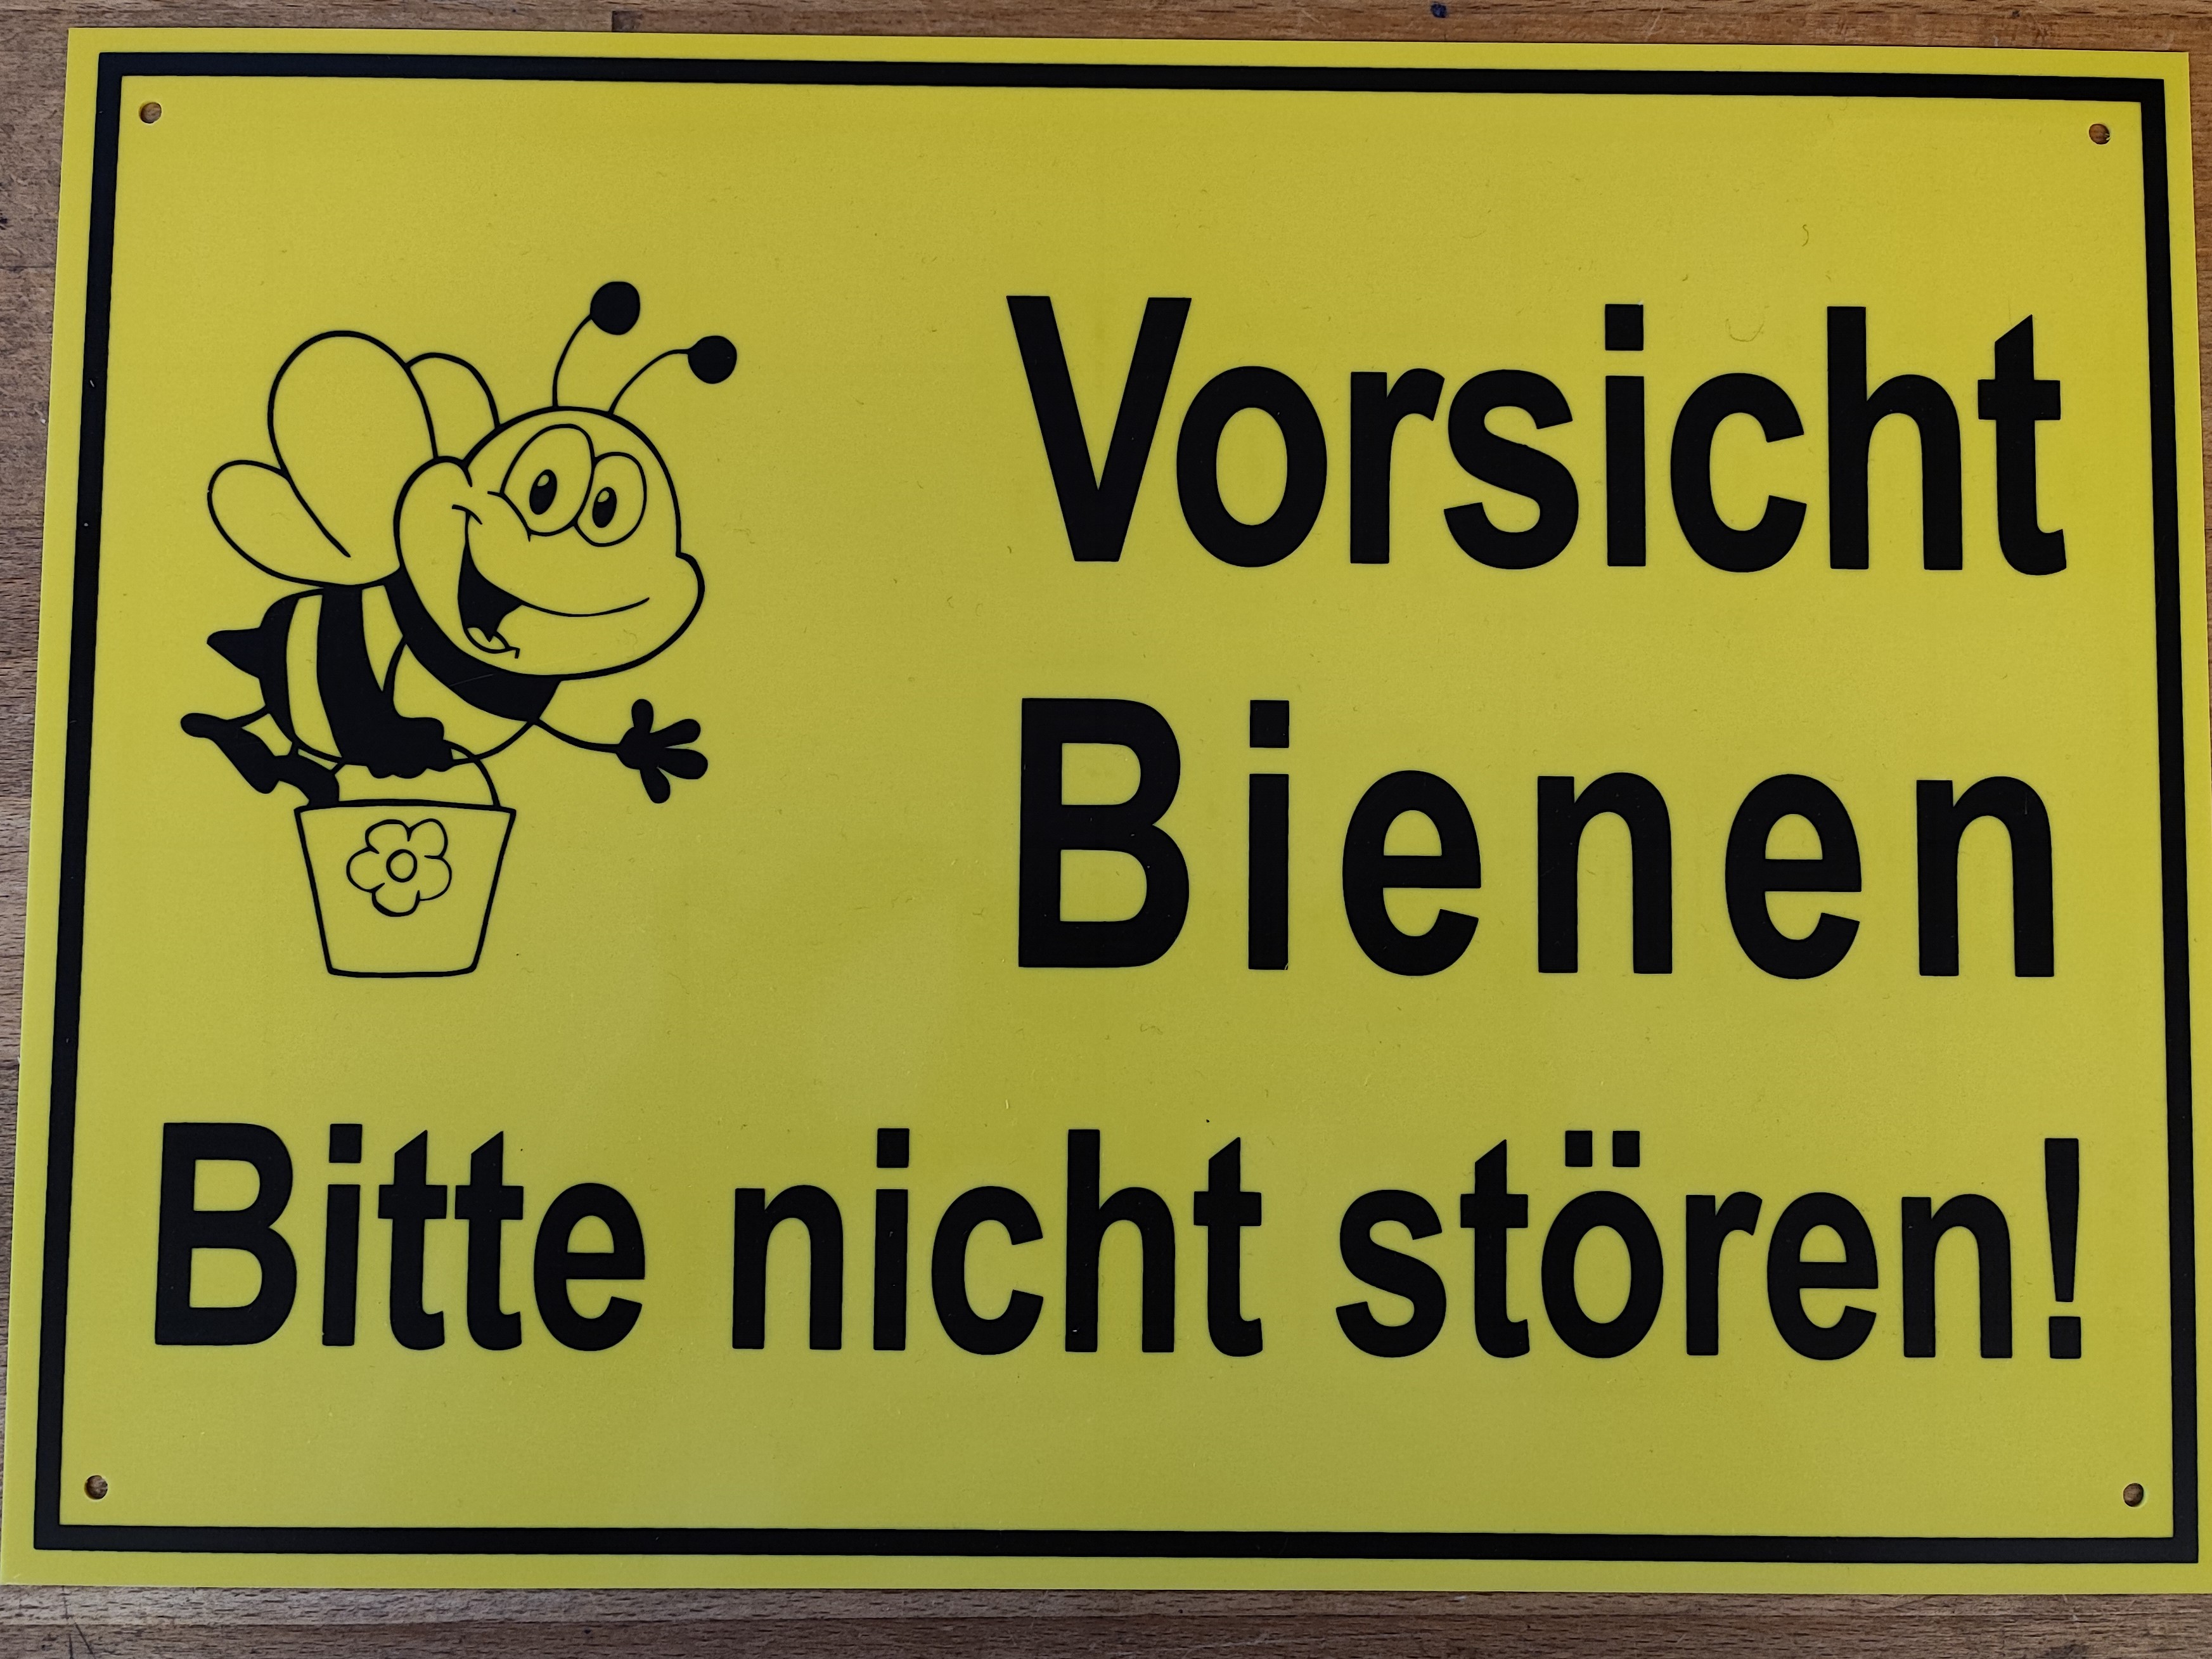 Hinweisschild in gelb: "Vorsicht Bienen - Bitte nicht stören!" 25 cm x 35 cm